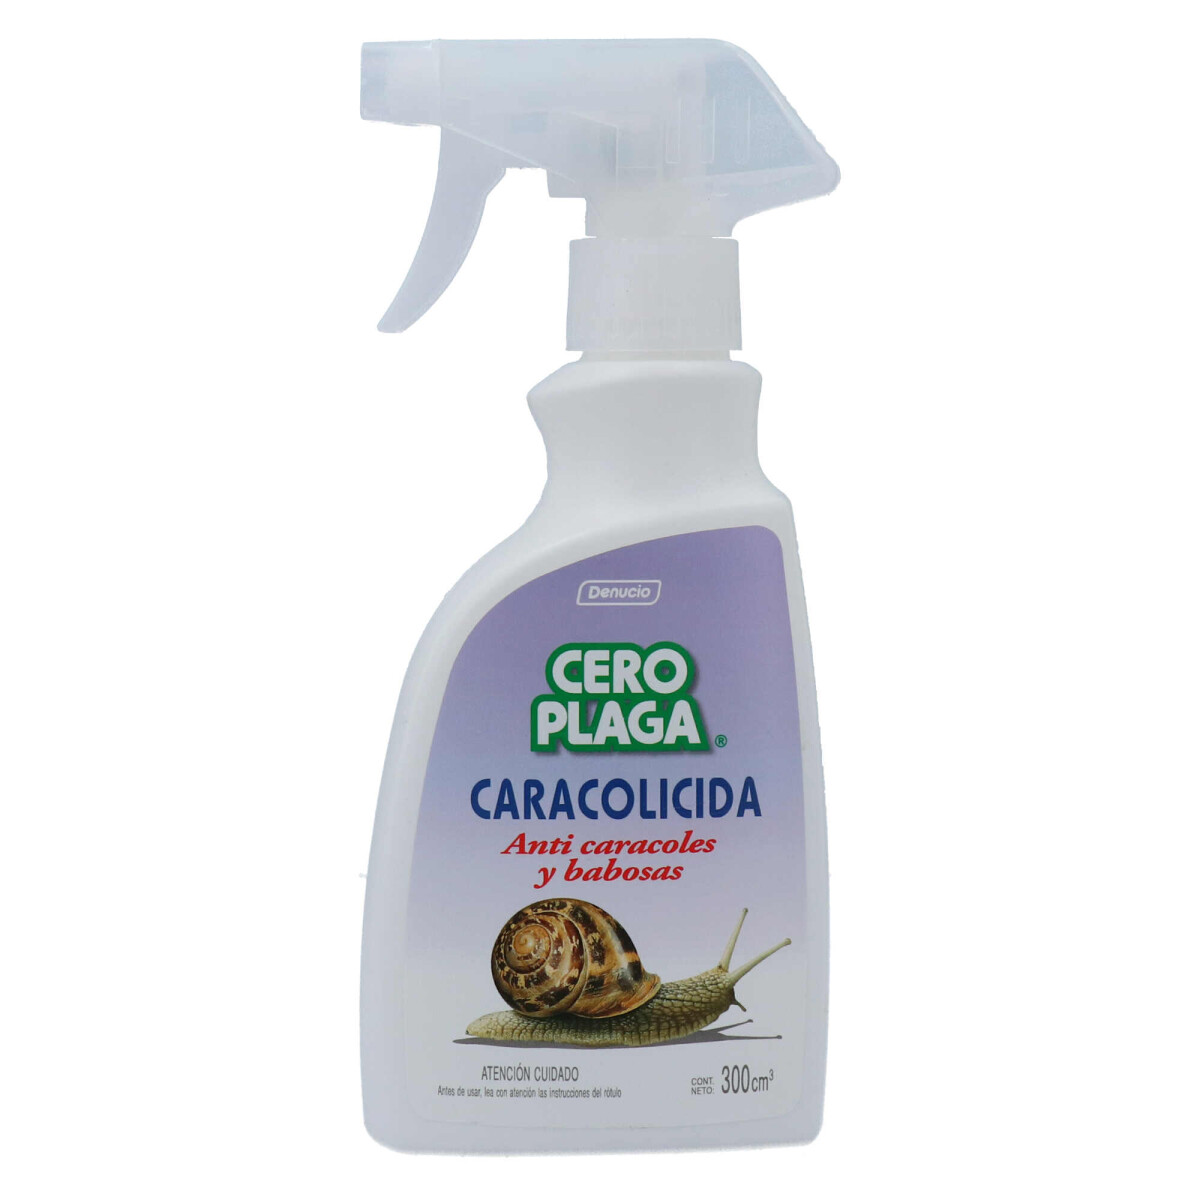 CERO PLAGA Caracolicida Spray 300cc 